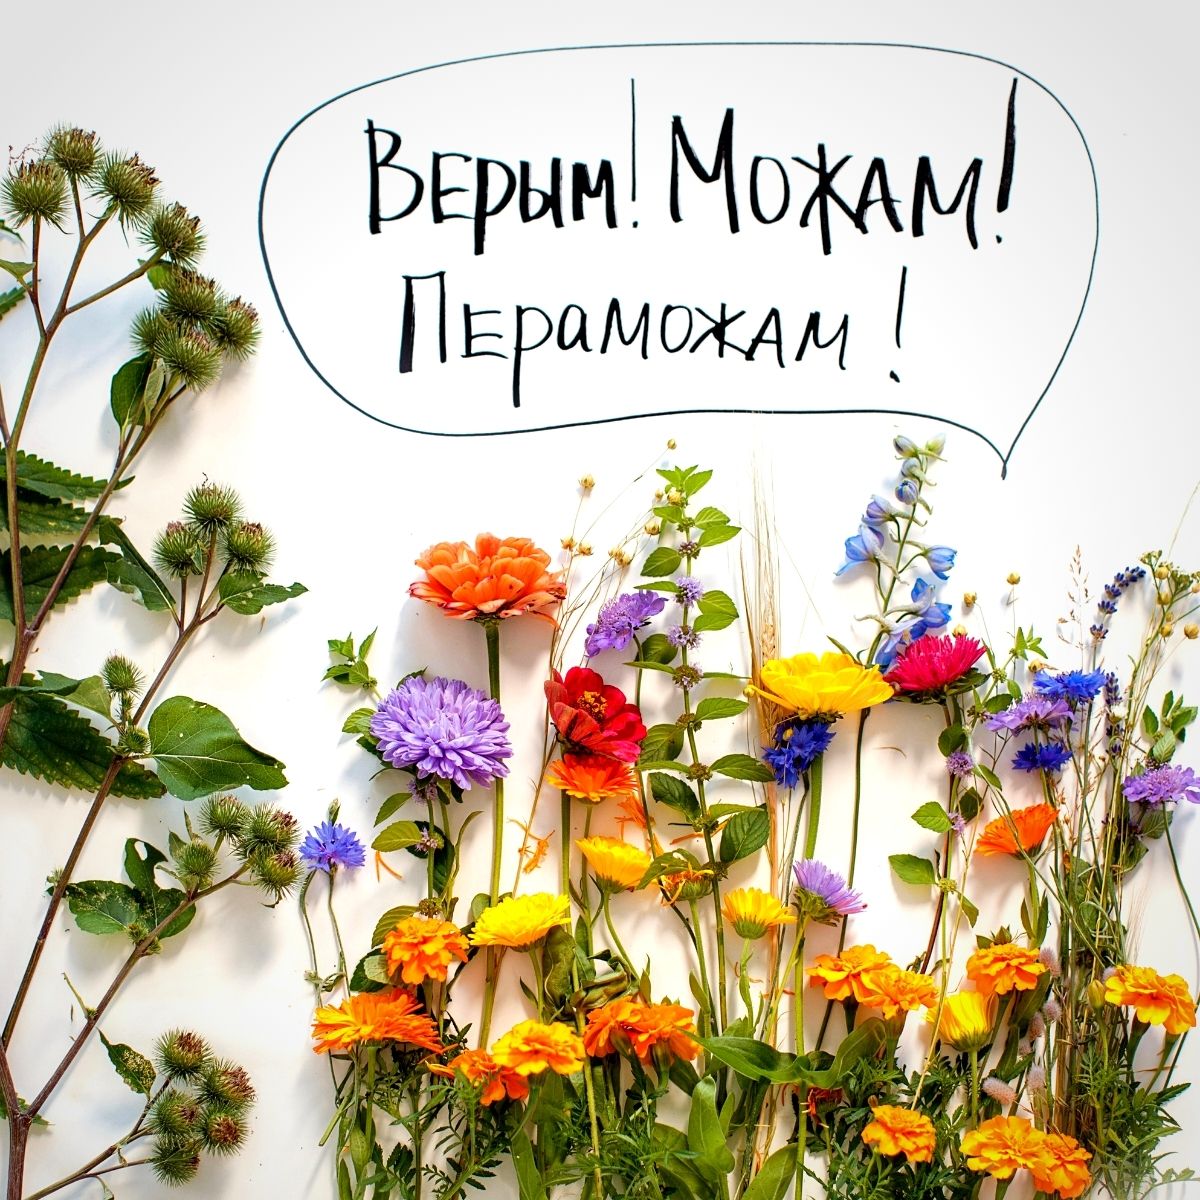 Flower Revolution of Belarus - Olga Gaydukevich on Thursd - 005